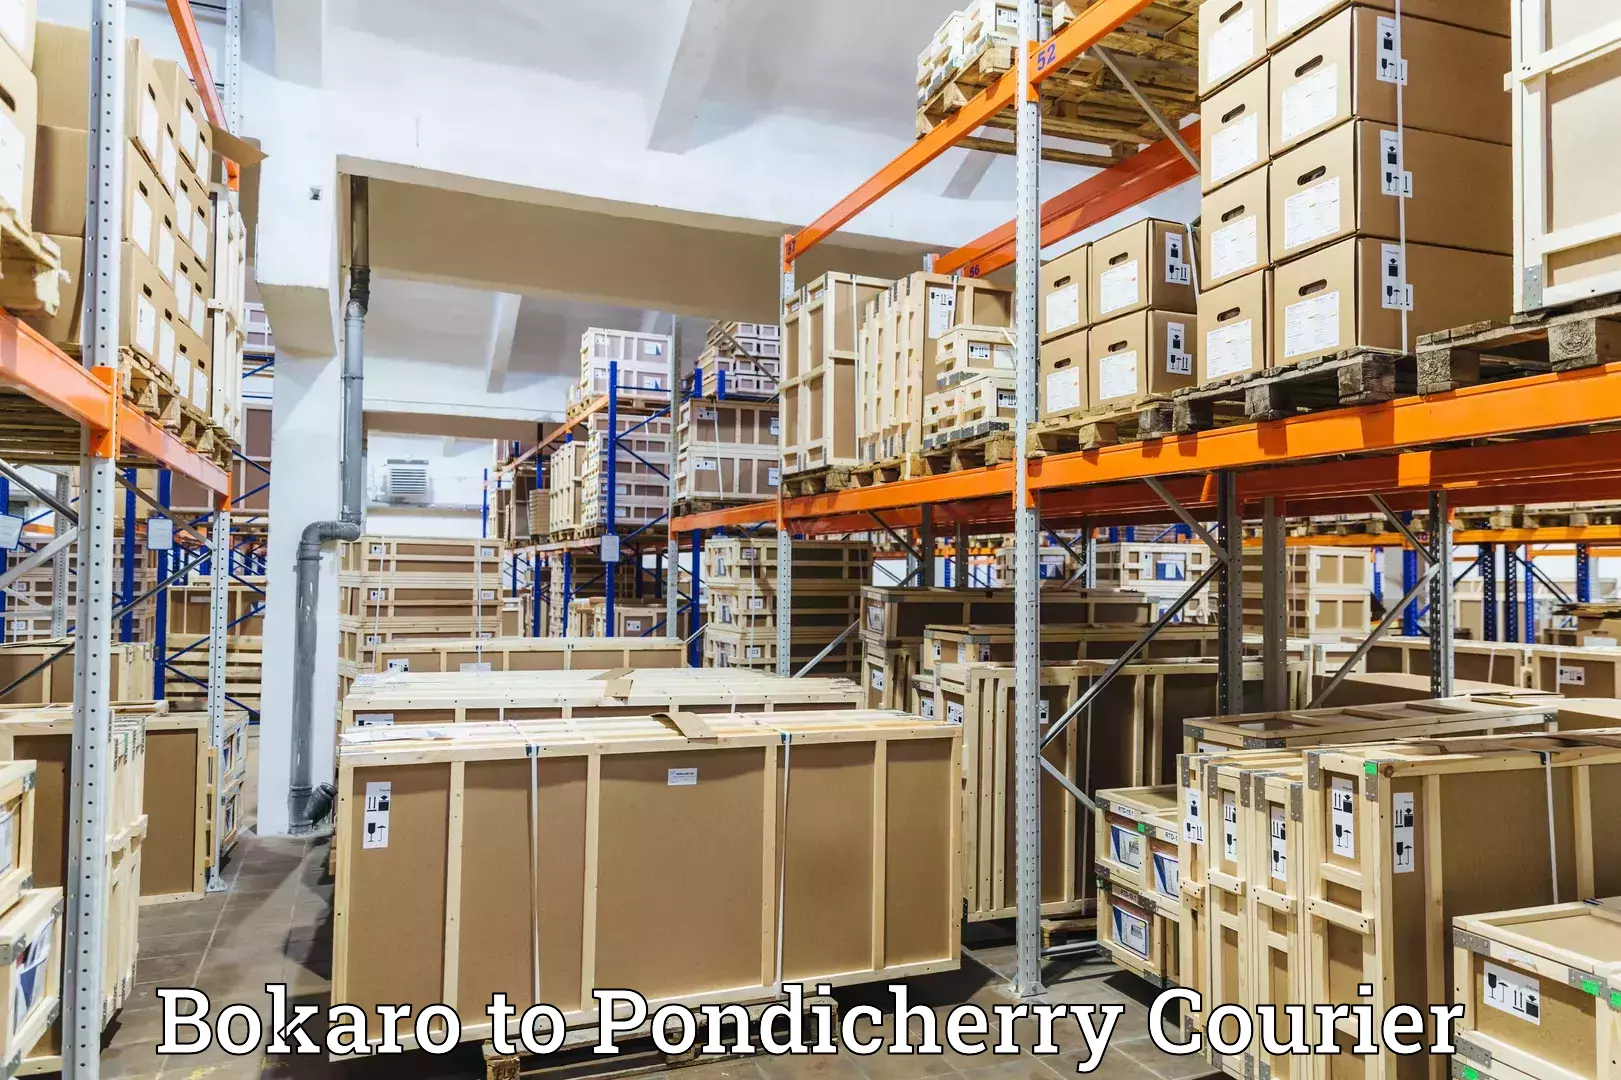 Reliable courier service Bokaro to Karaikal